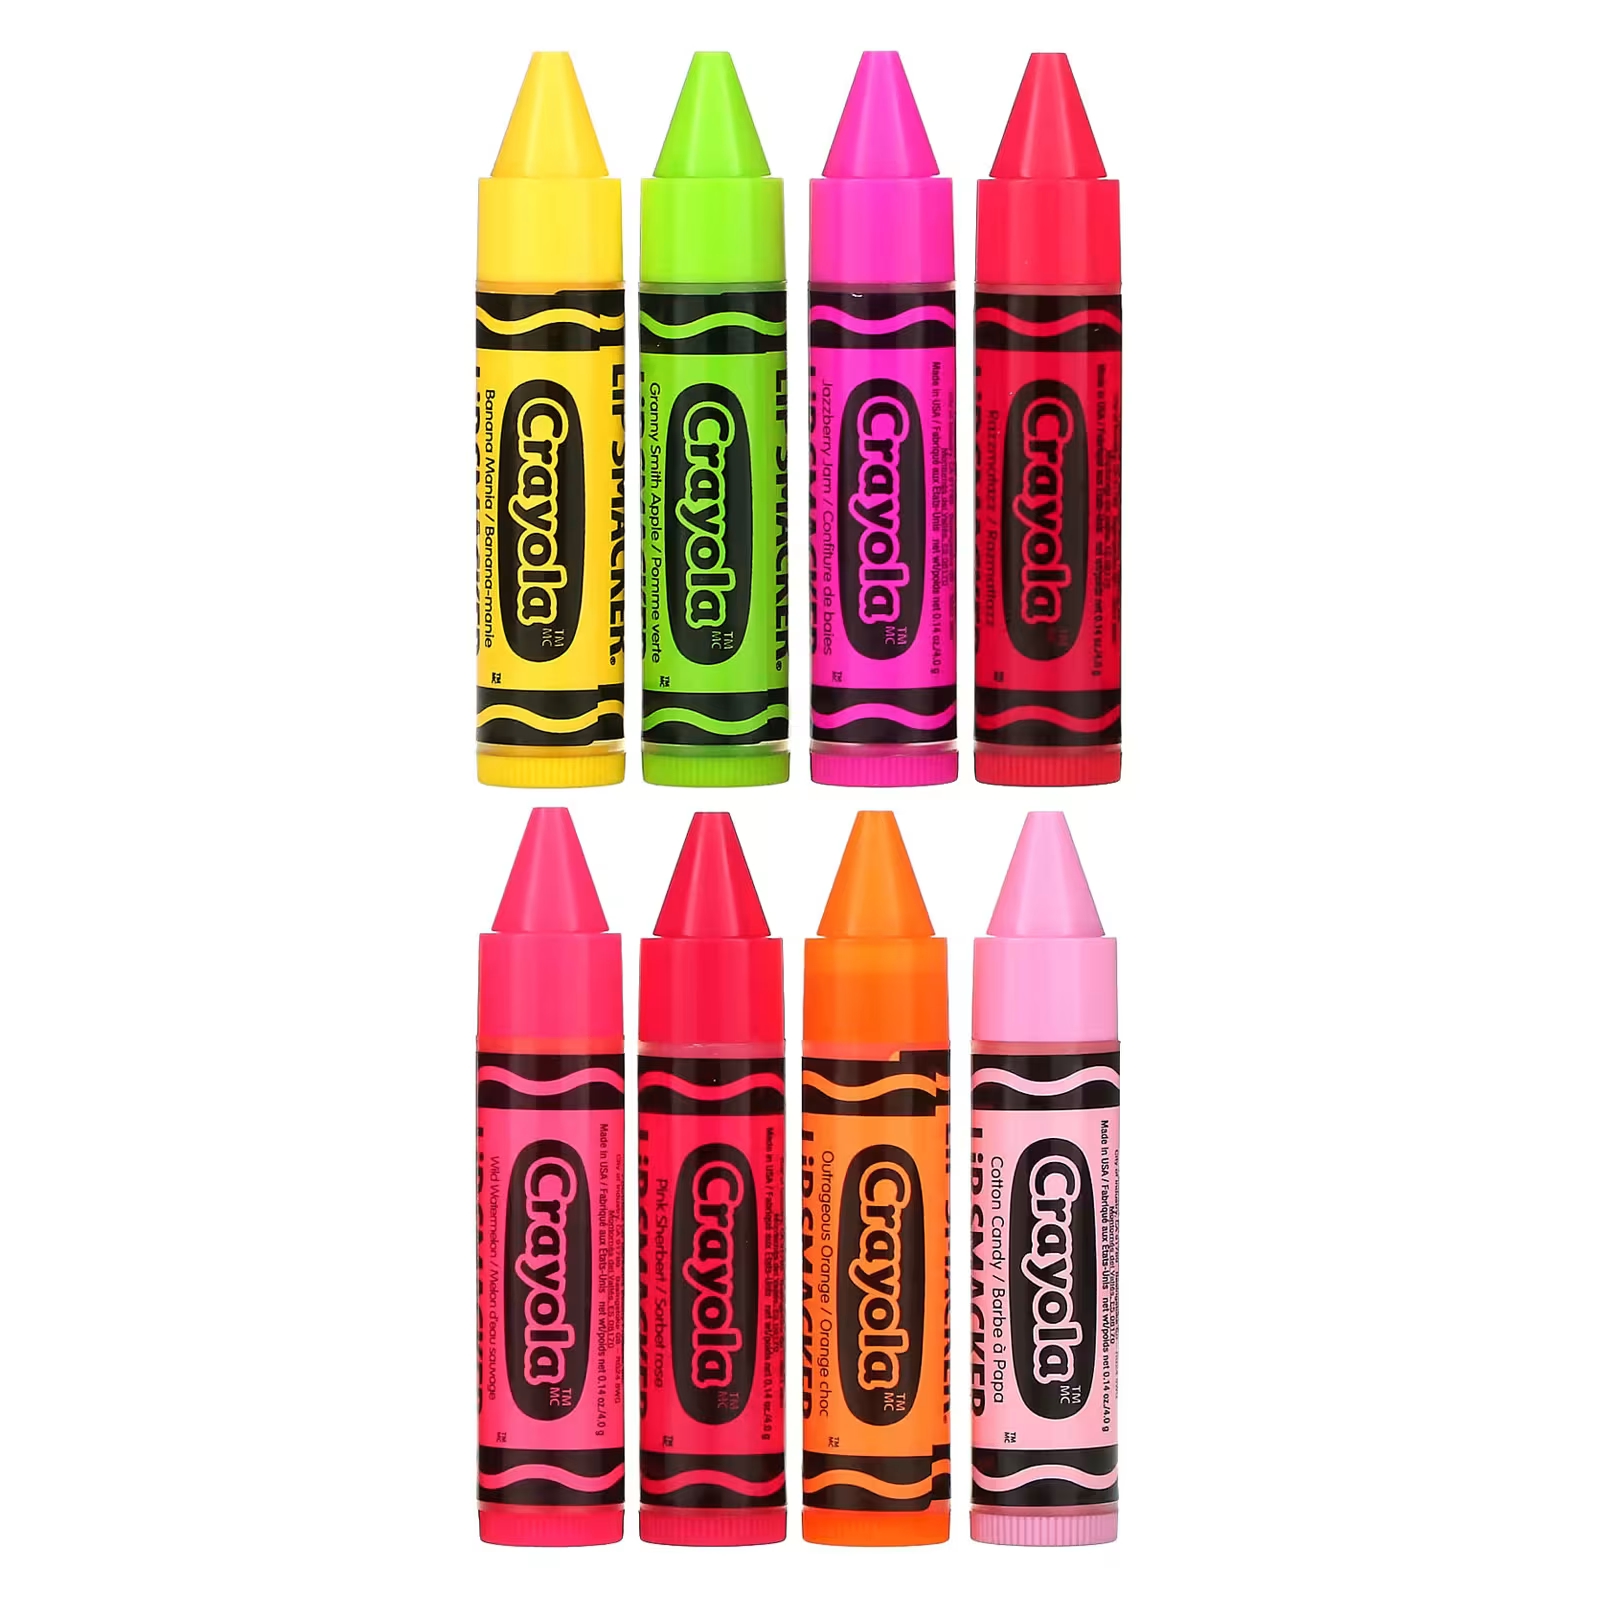 Lip Smacker Crayola Бальзам для губ «Вечеринка», 8 штук по 0,14 унции (4 г) каждая cnmg120404 em ybg202 cnmg120408 em ybg202 cnmg120412 em ybg202 cnmg431 cnmg432 cnmg433 zcc ct карбидные вставки с чпу 10 шт коробка